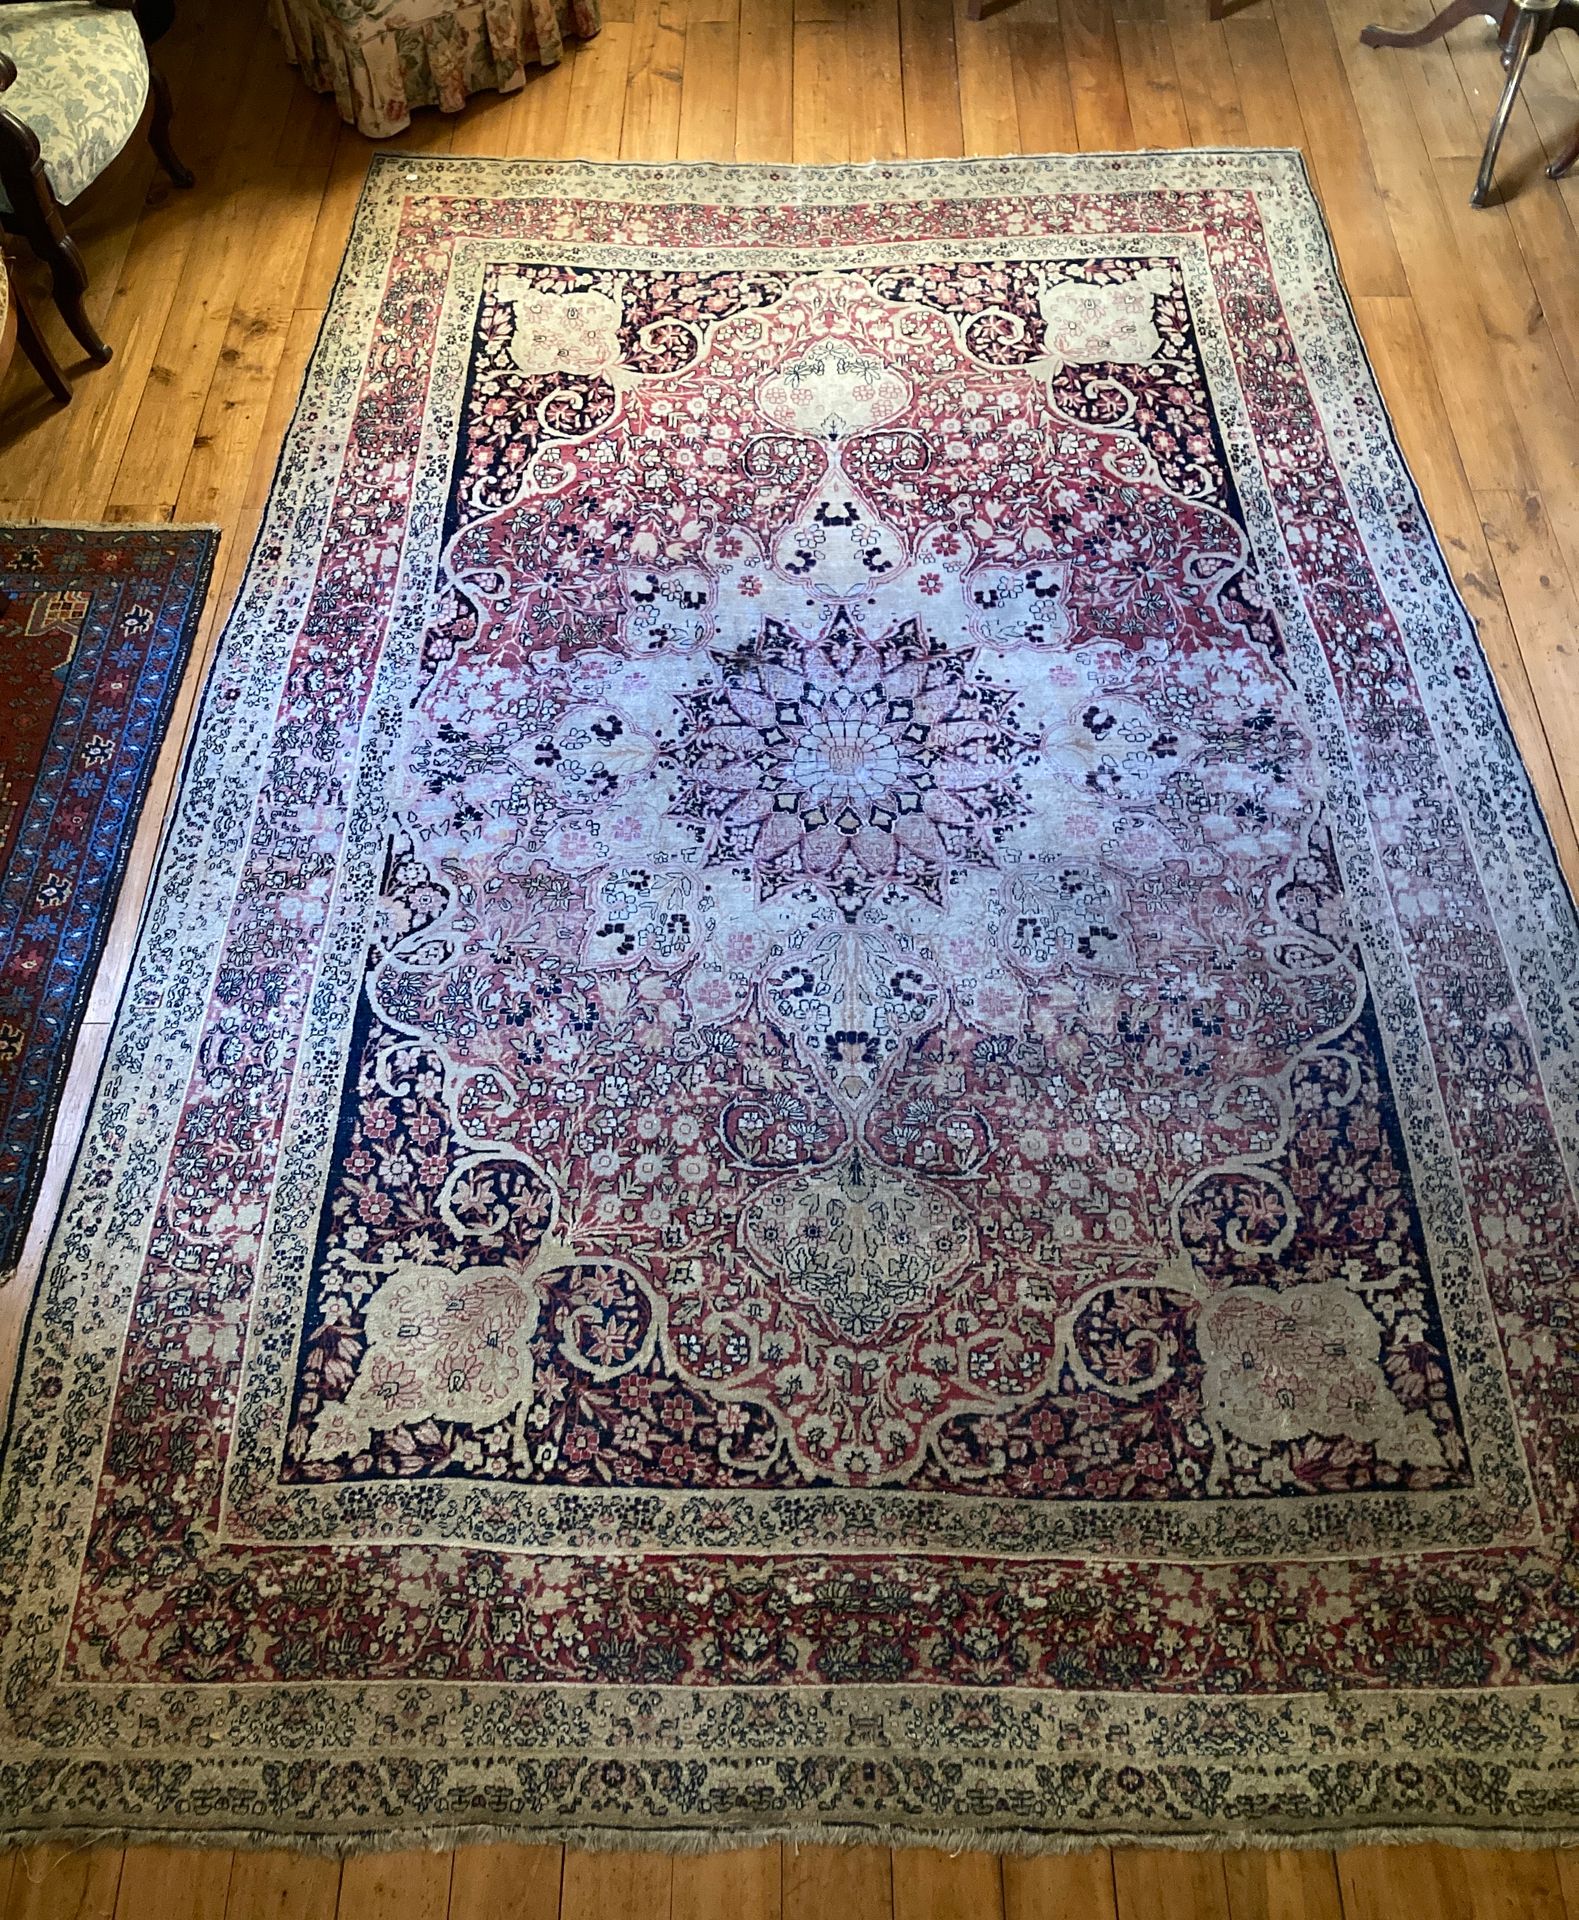 Null 174基尔曼地毯（伊朗）--一张旧地毯，破旧，部分黑色背景。

长：307厘米，宽：217厘米。